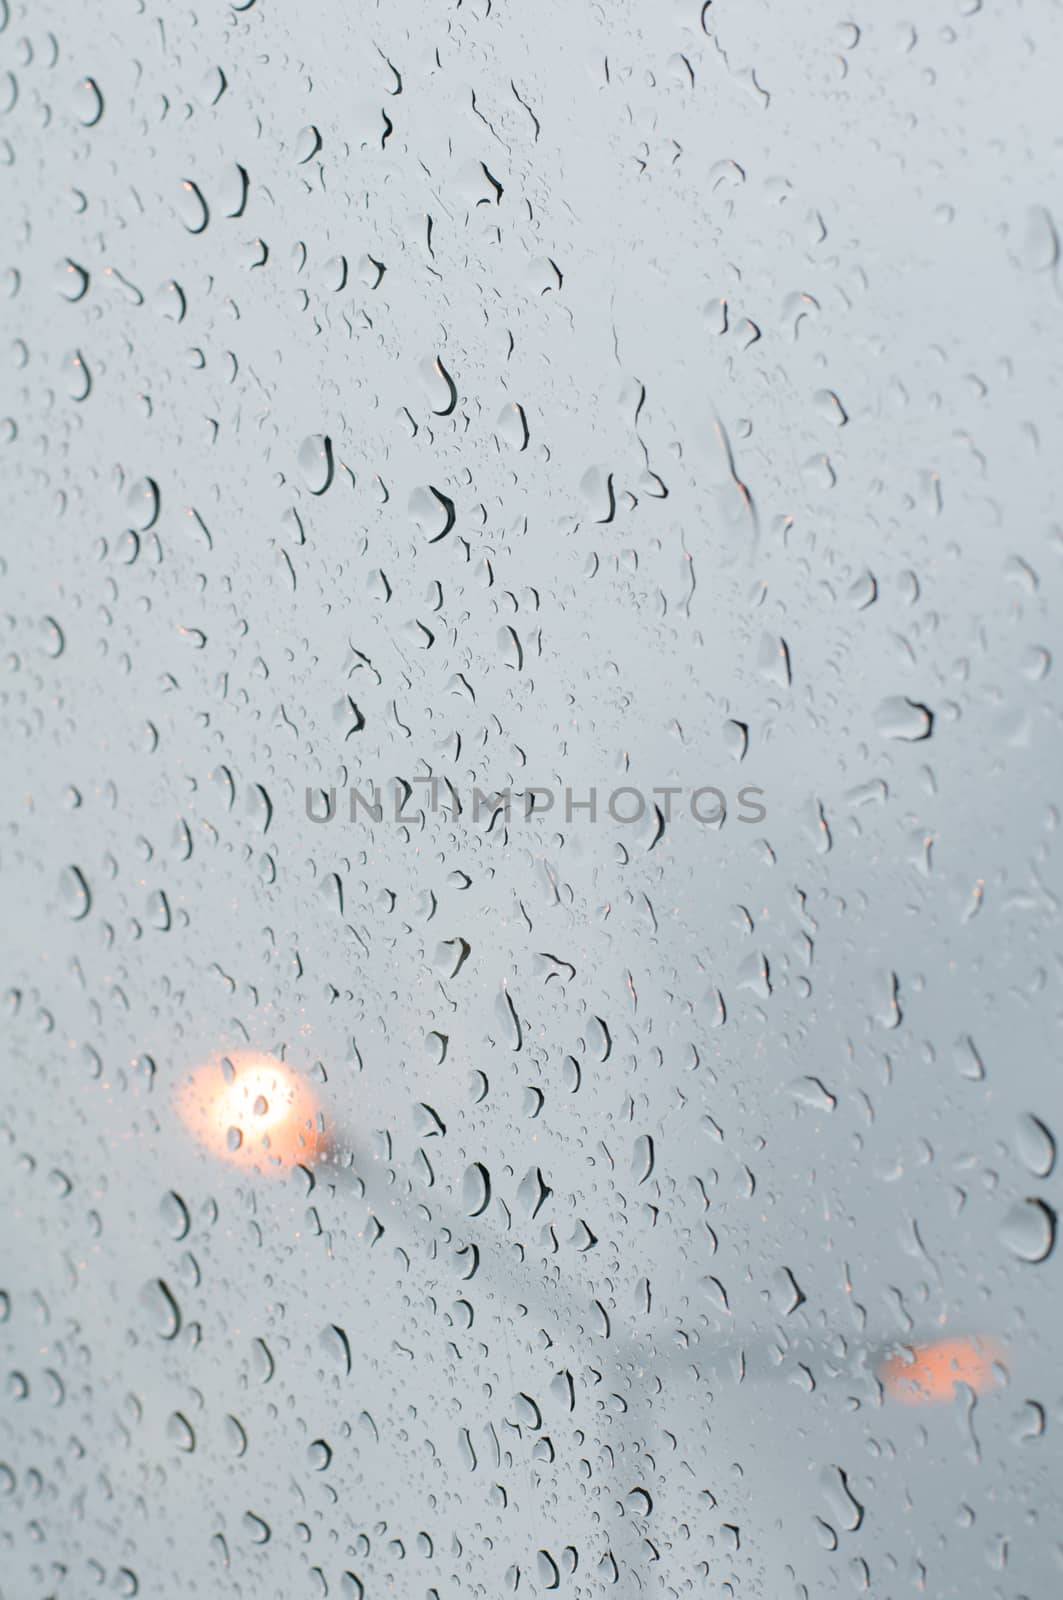 water drop on glass  by Sorapop